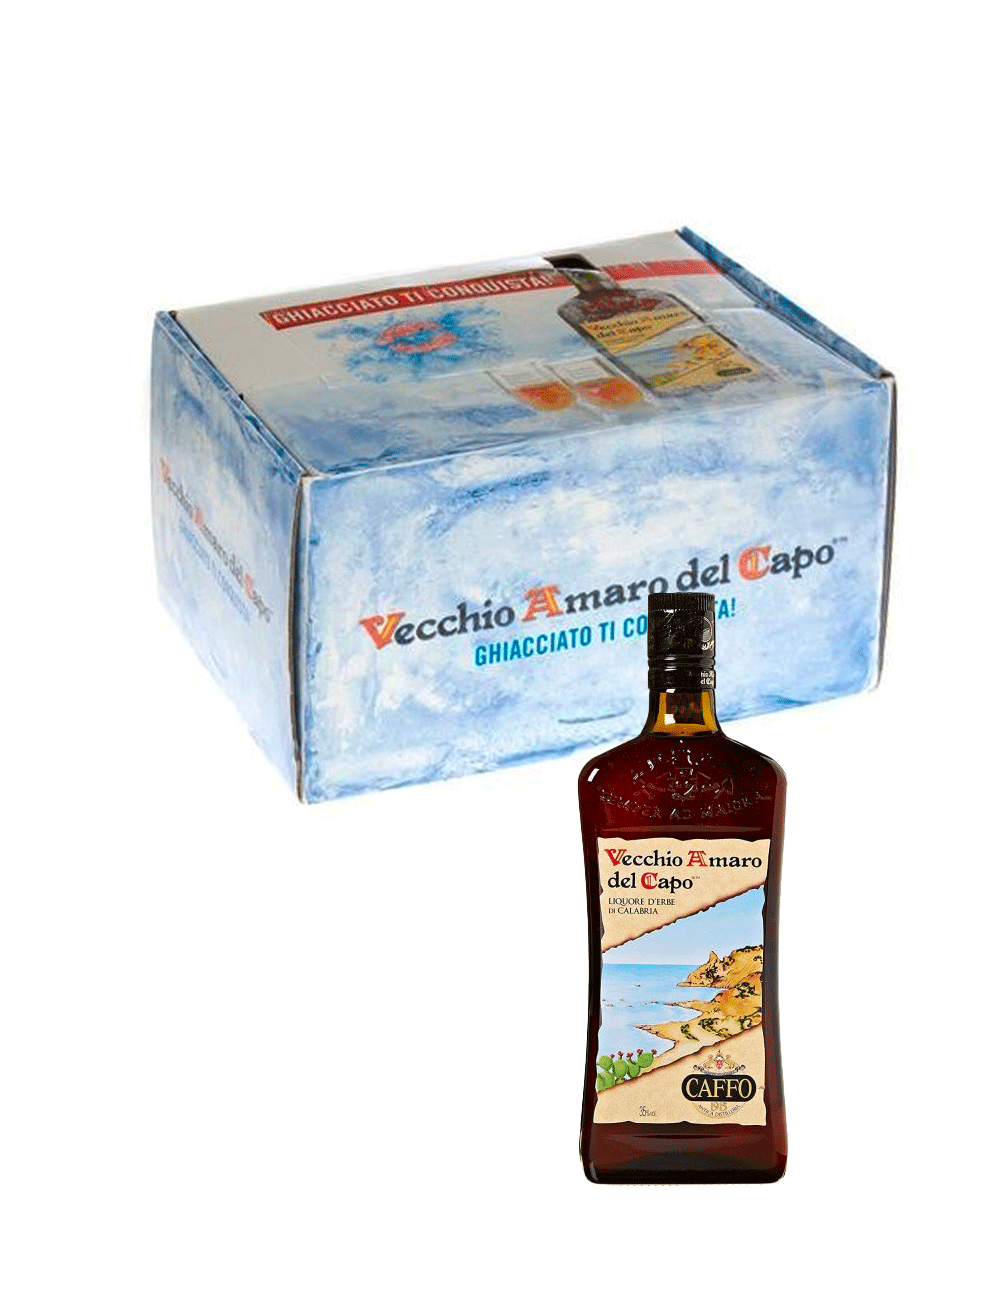 Vecchio Amaro Del Capo mignon box 24 x 5 cl